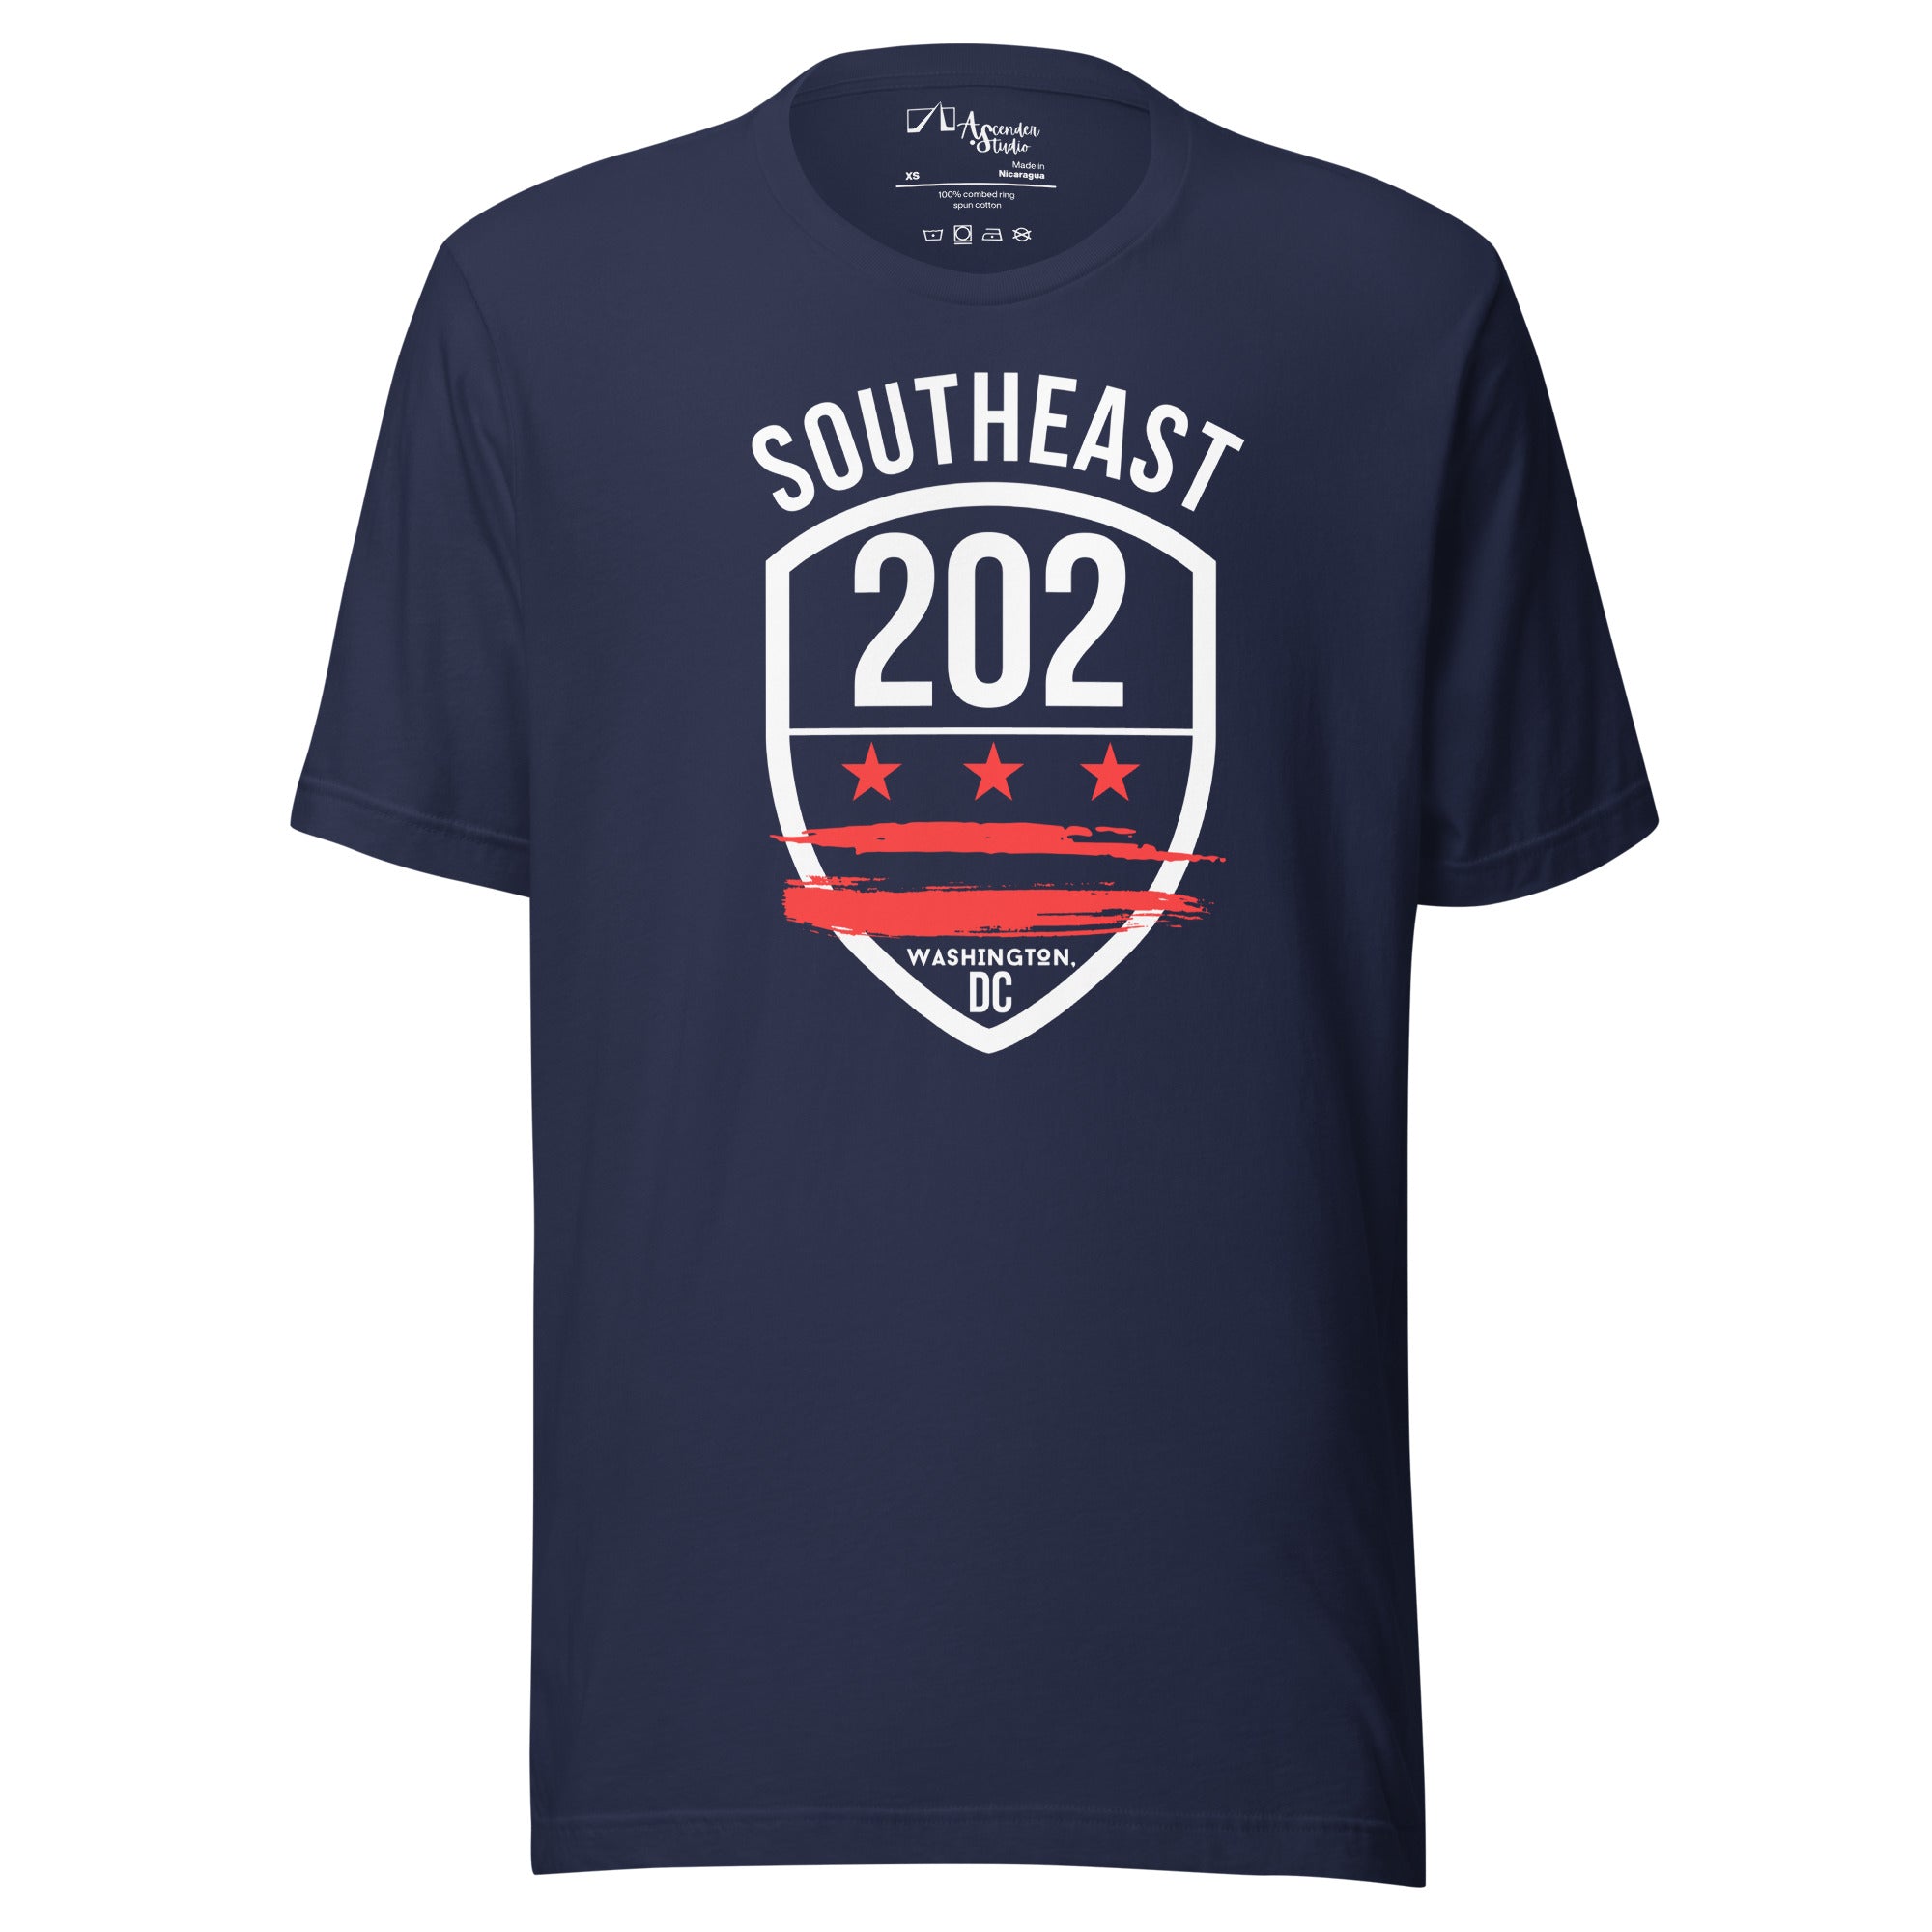 'SOUTHEAST WASHINGTON DC/202' (White/Red Emblem) -Navy Unisex T-shirt